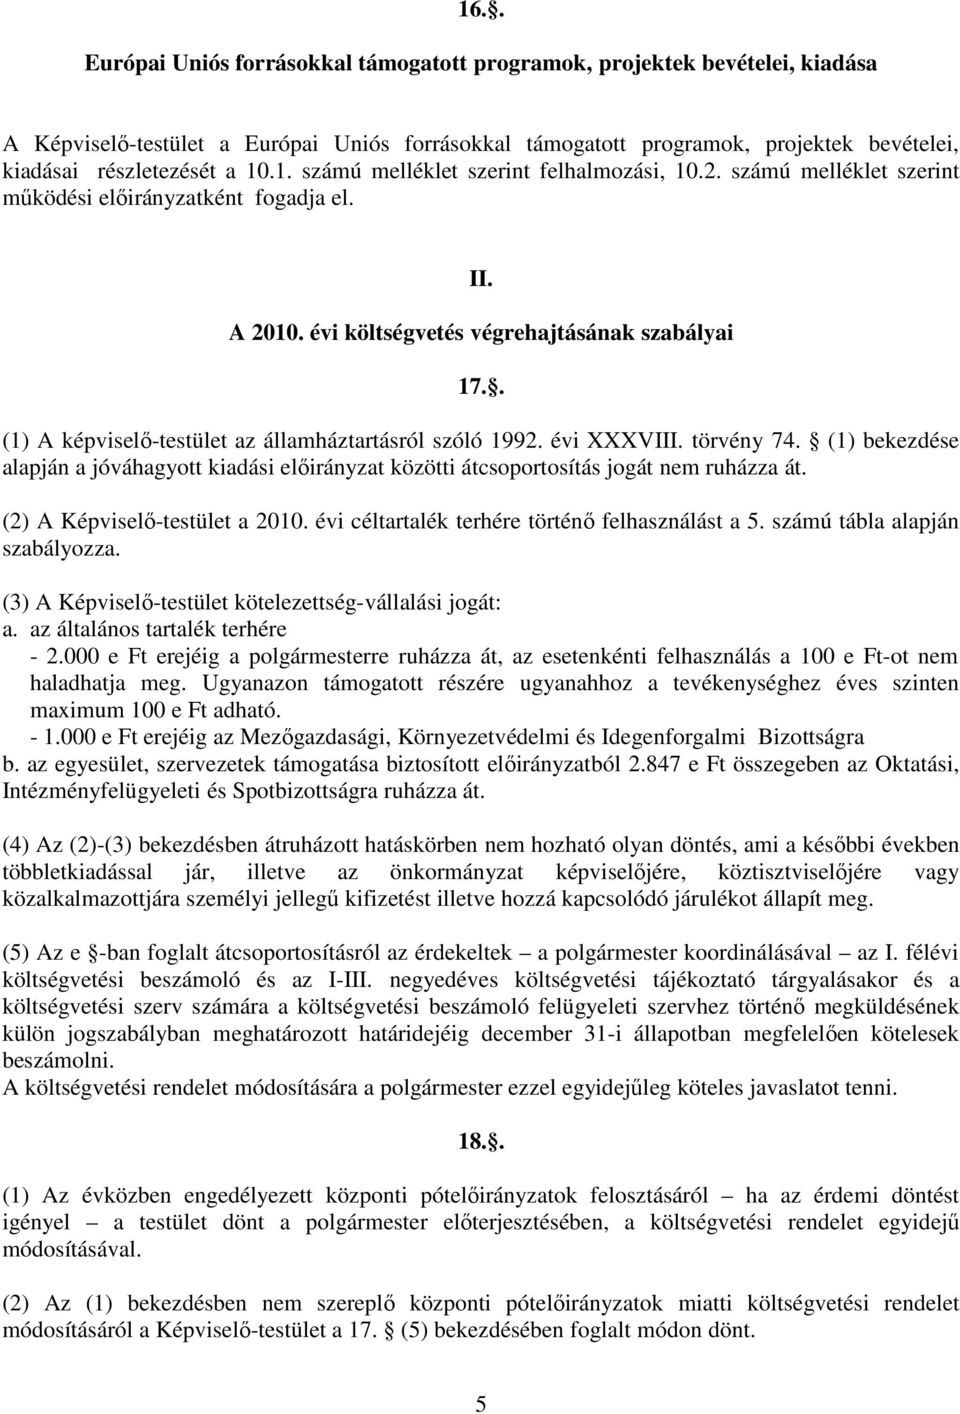 . (1) A képviselı-testület az államháztartásról szóló 1992. évi XXXVIII. törvény 74. (1) bekezdése alapján a jóváhagyott kiadási elıirányzat közötti átcsoportosítás jogát nem ruházza át.